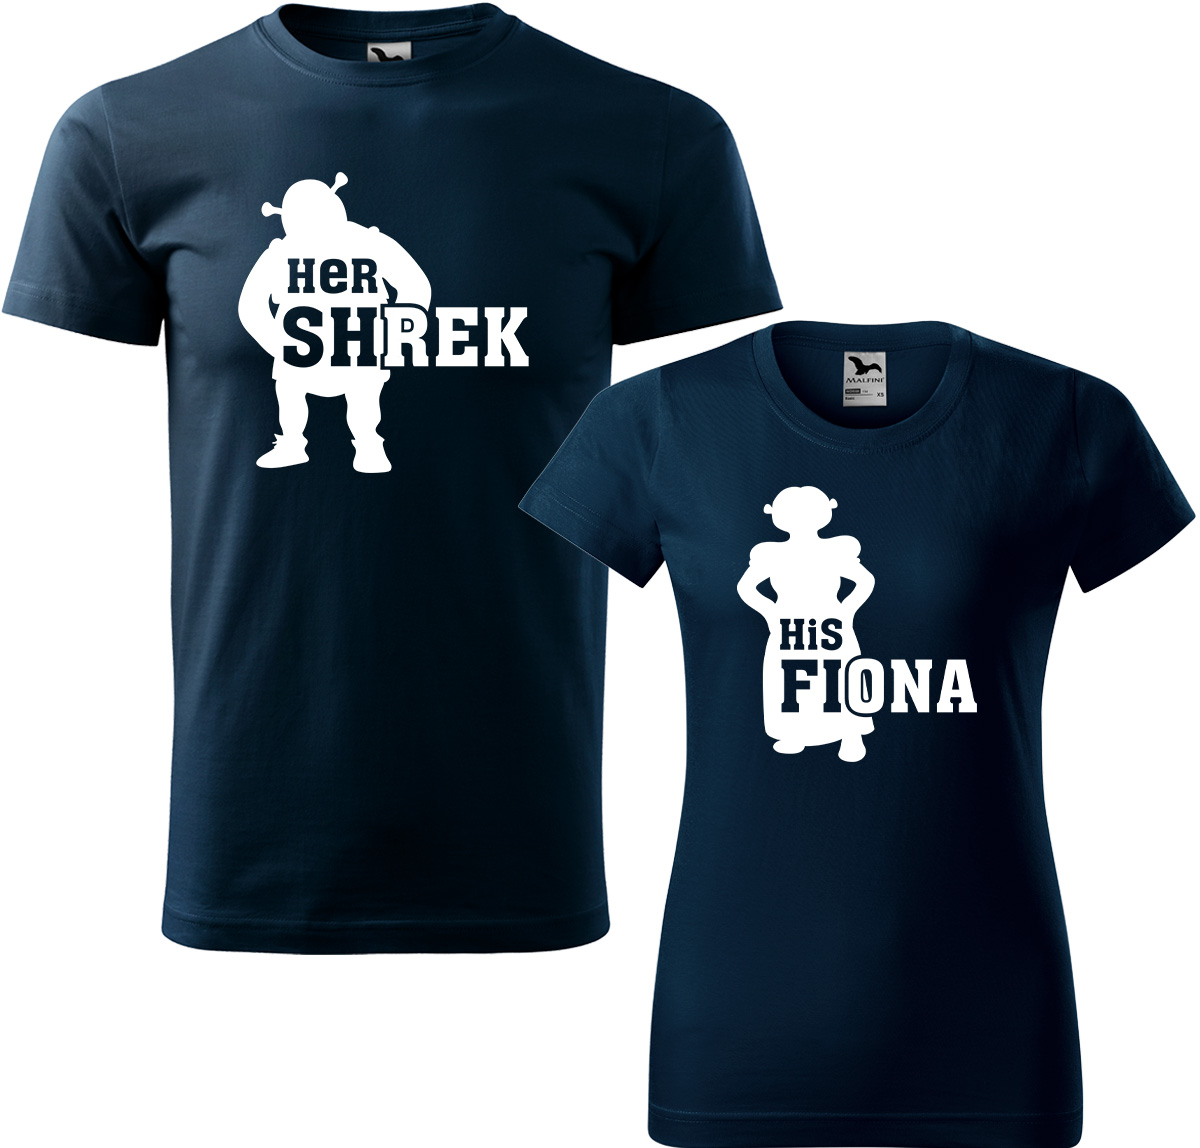 Trička pro páry - Shrek a Fiona Barva: Námořní modrá (02), Velikost dámské tričko: S, Velikost pánské tričko: M